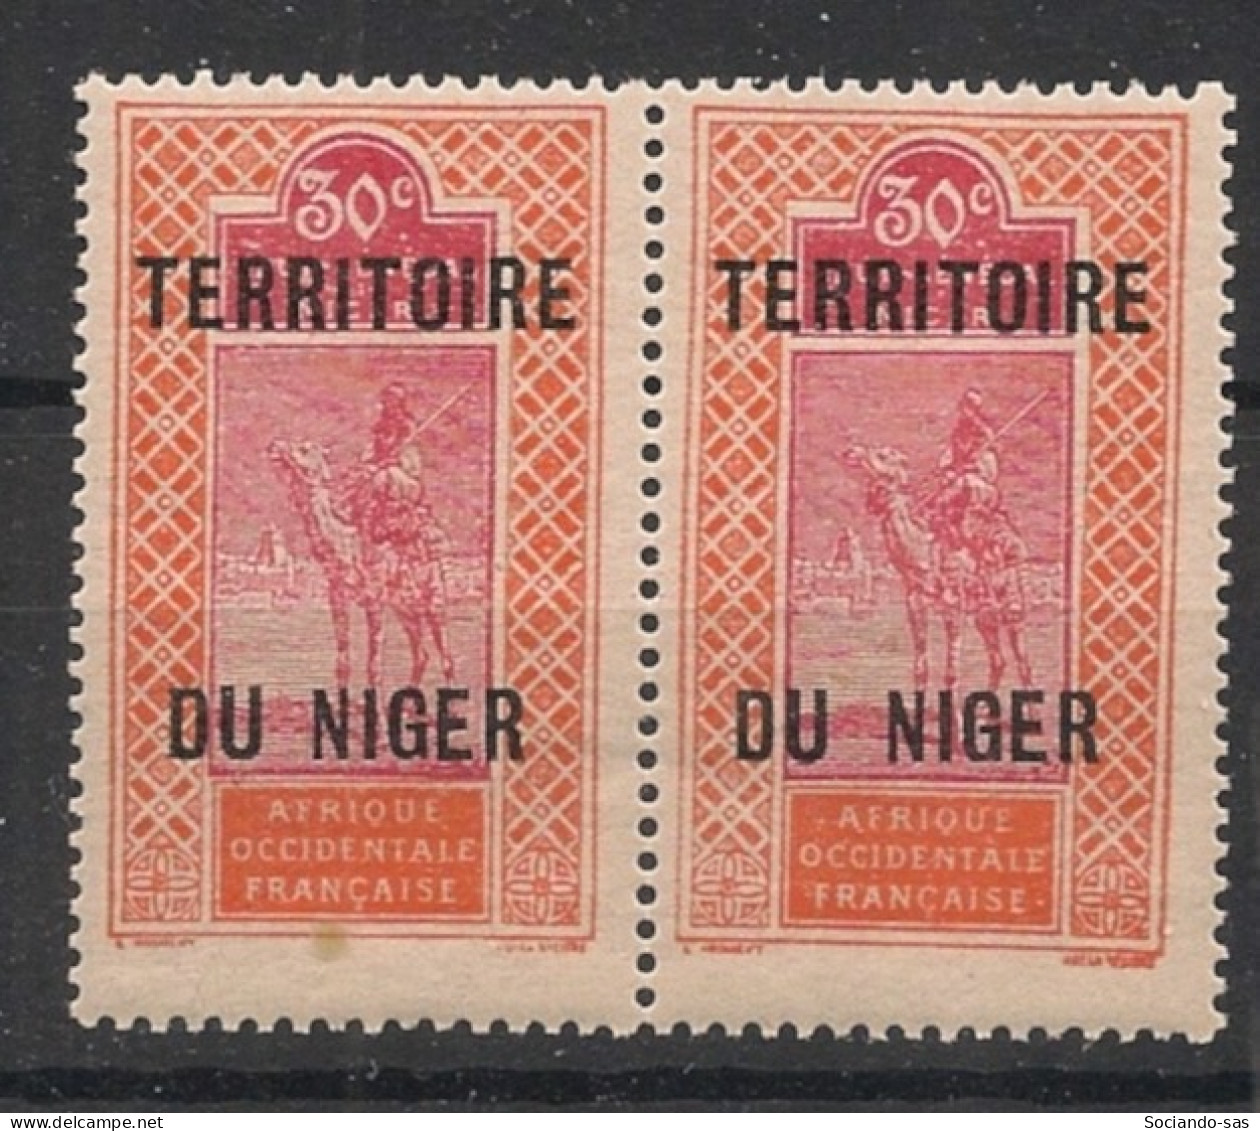 NIGER - 1921-22 - N°YT 9Aa - Targui 30c Rouge - VARIETE DU Et NIGER Espacés T.a.n. - Neuf Luxe ** / MNH / Postfrisch - Neufs